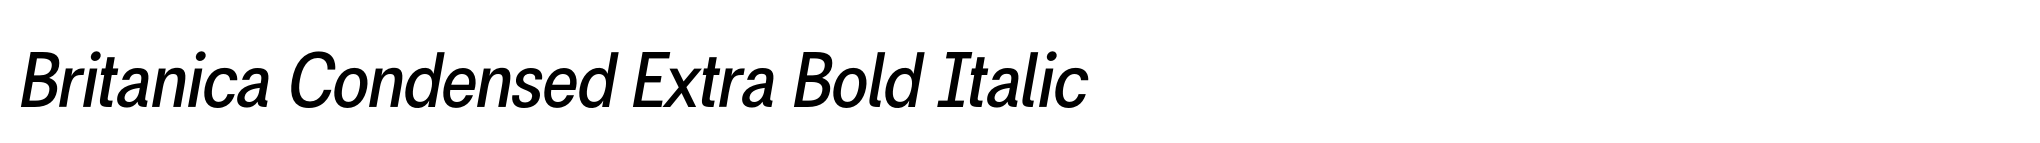 Britanica Condensed Extra Bold Italic image